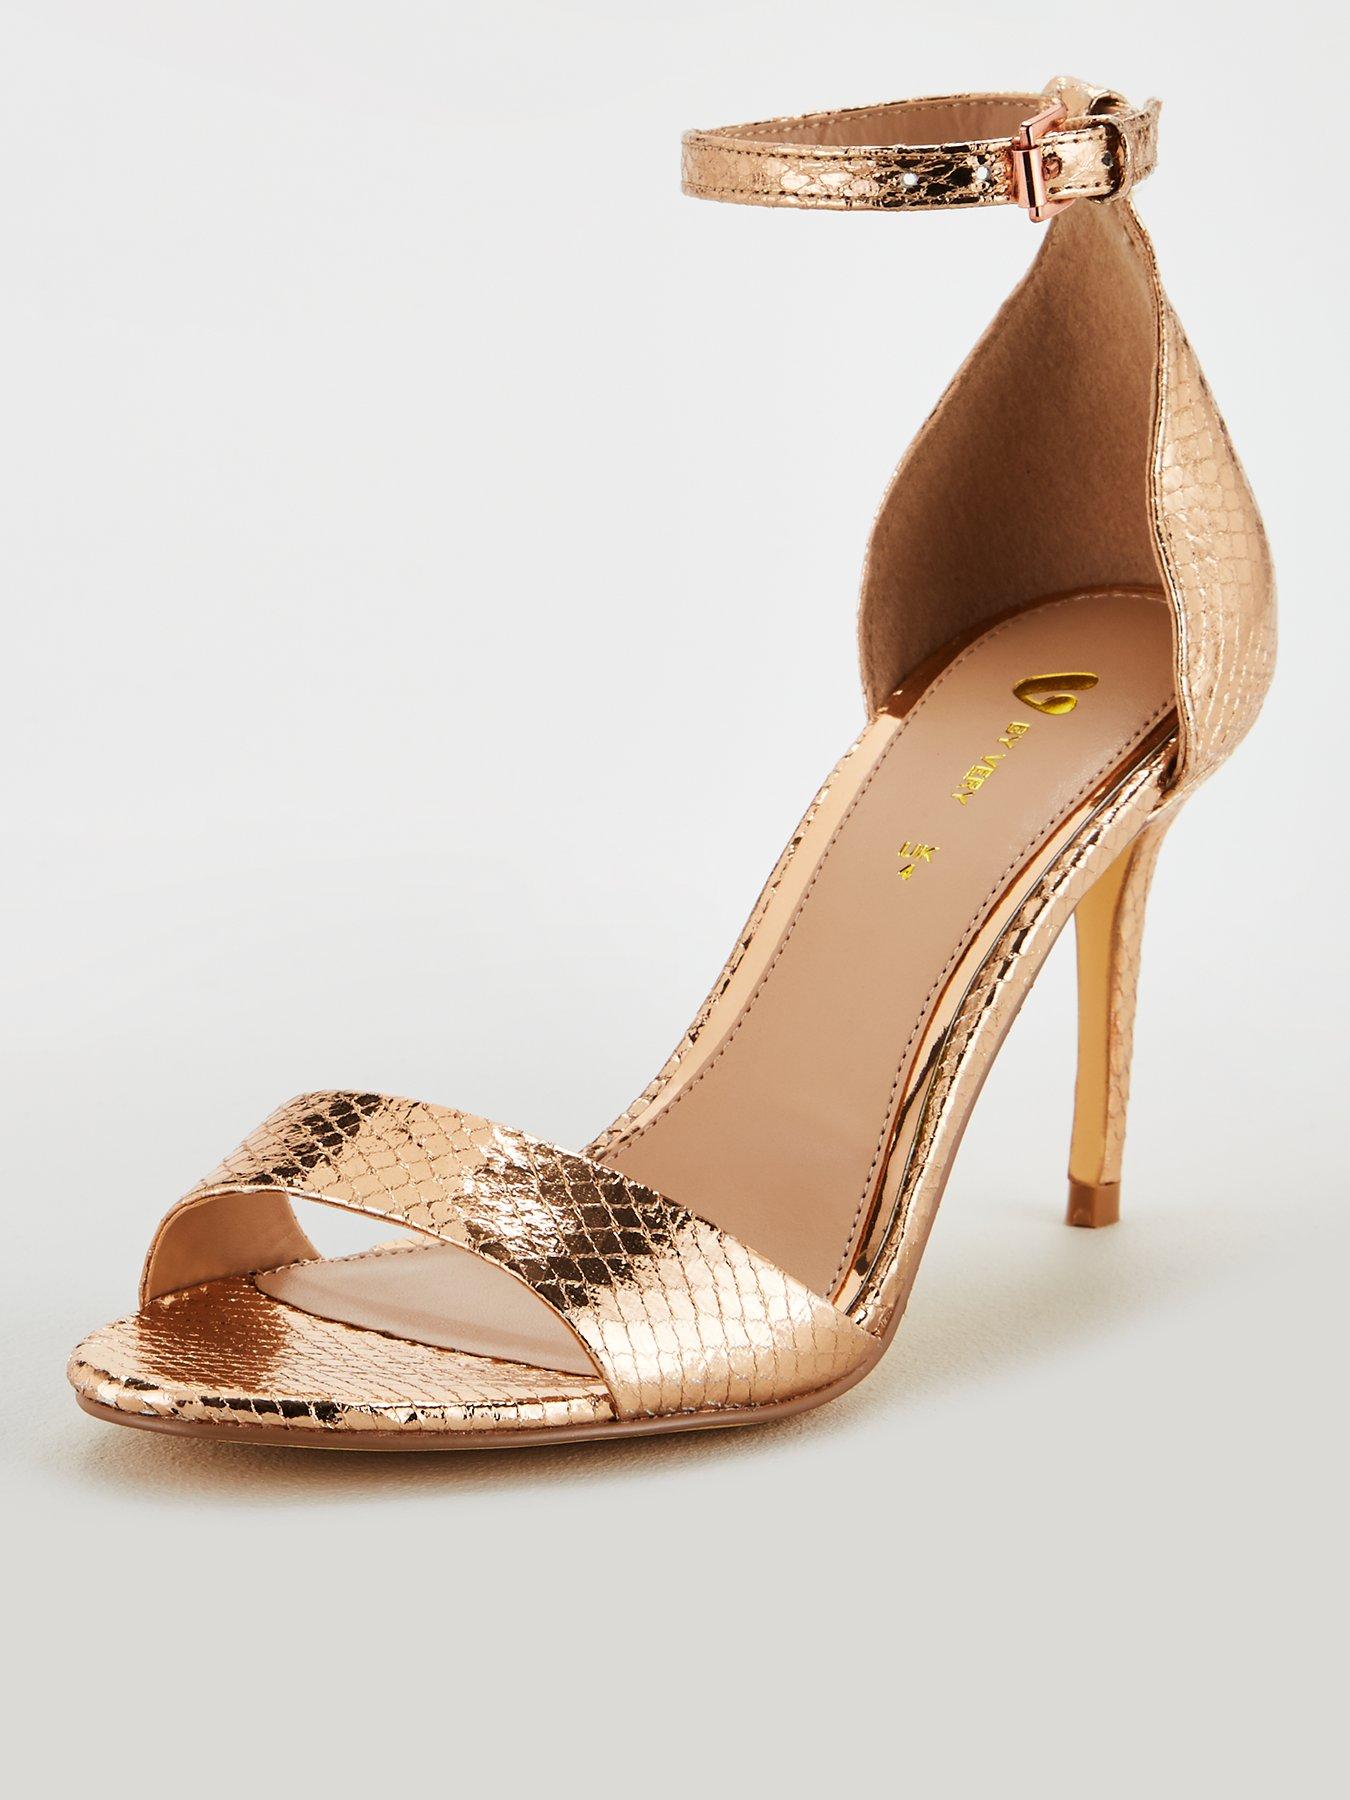 gold sandals heels uk